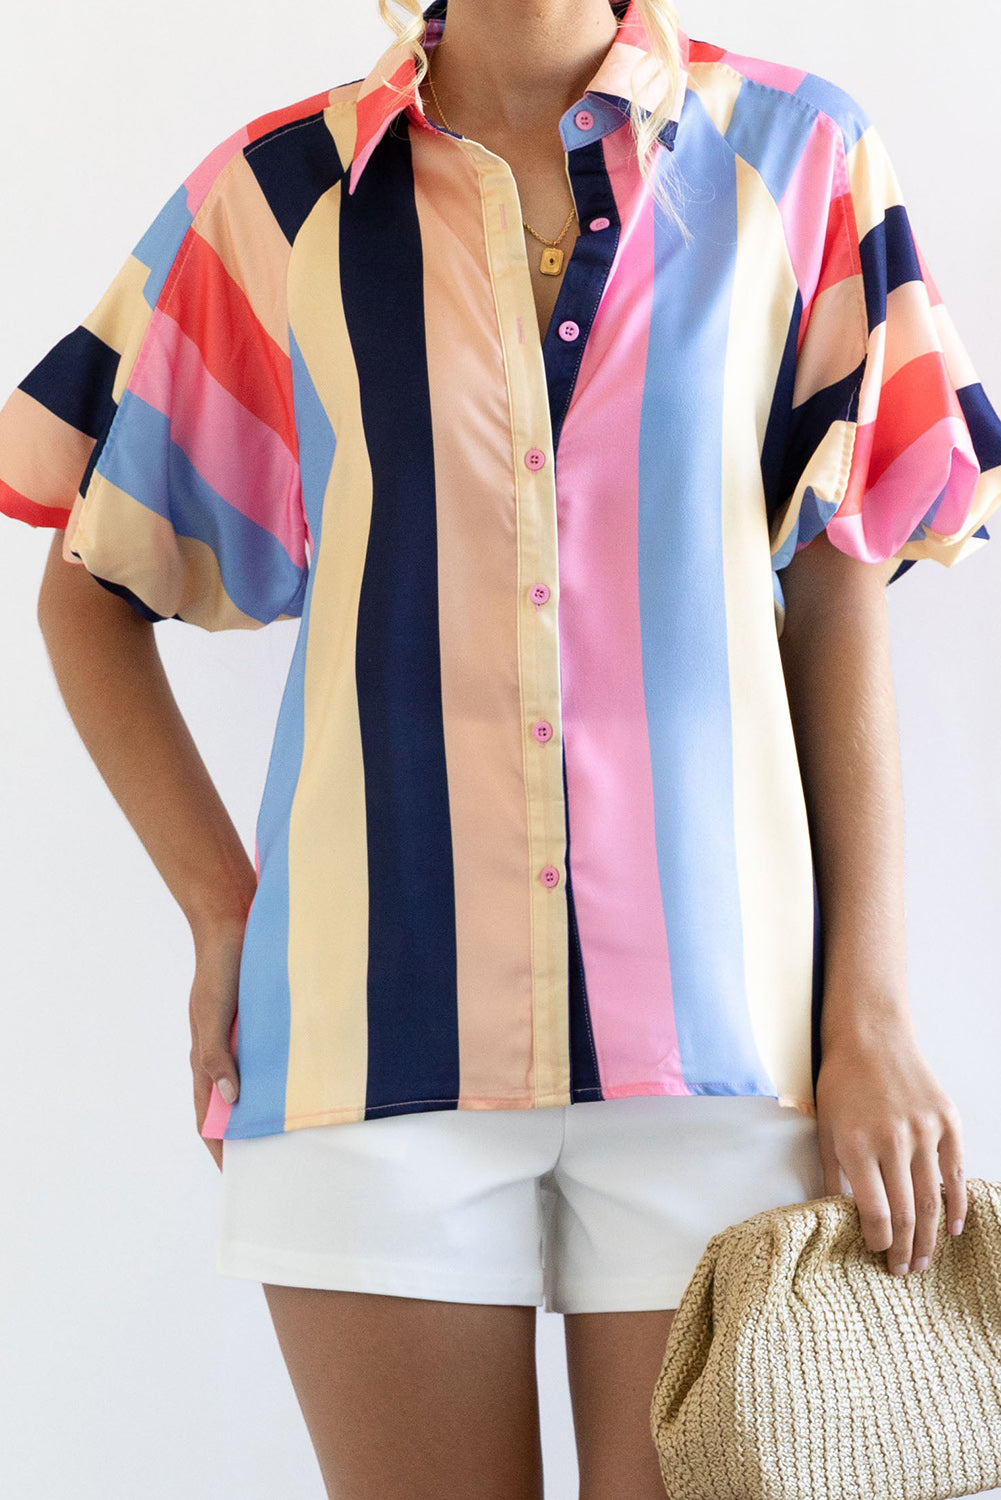 Mehrfarbiges, gestreiftes Hemd mit Puffärmeln und Knöpfen in Blockfarben